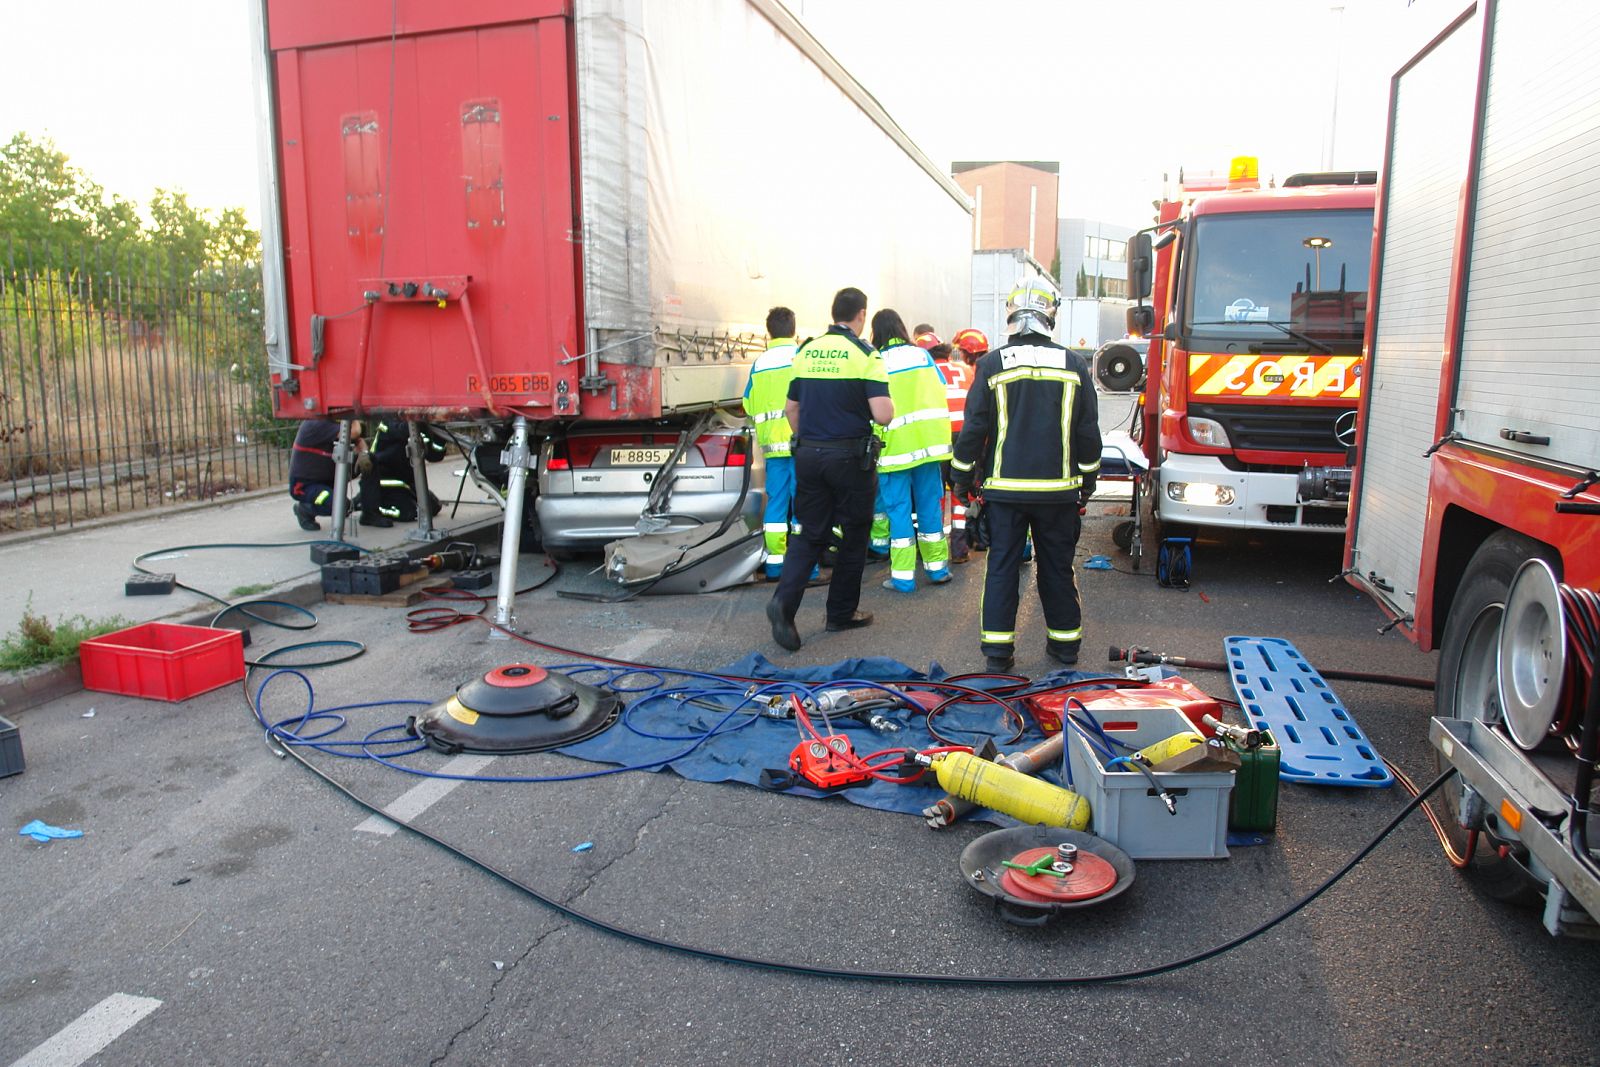 Una joven de 19 años ha muerto y sus cuatro acompañantes están heridos tras un accidente de tráfico en Leganés, Madrid. El coche que conducían se ha empotrado contra el remolque de un camión.